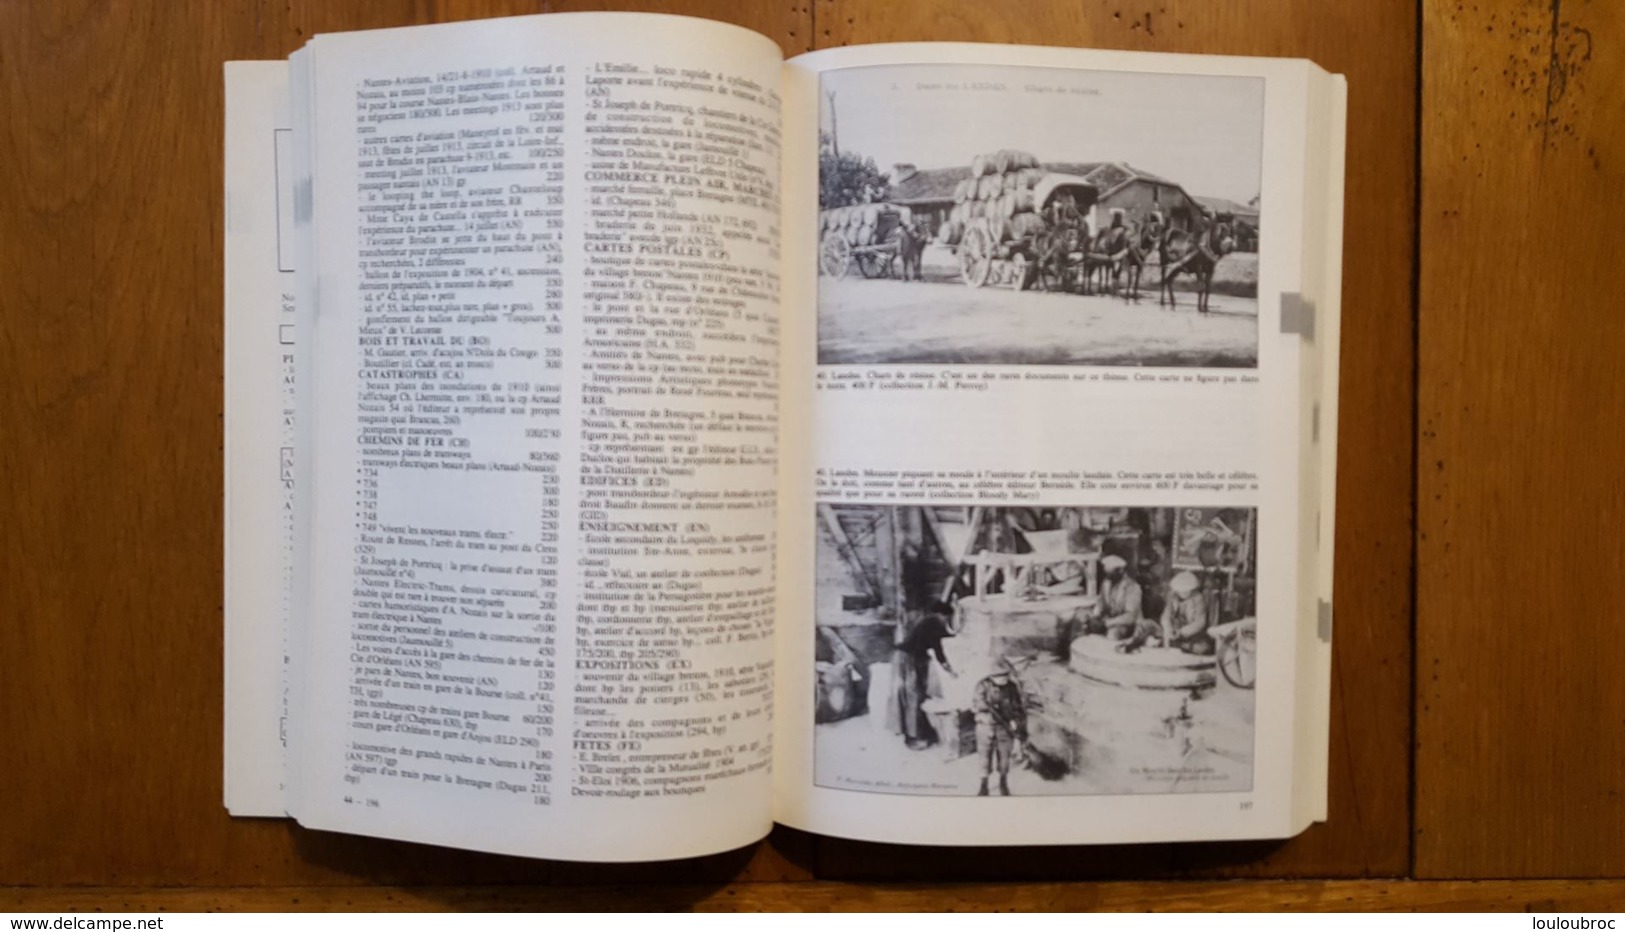 NEUDIN 1990 LES MEILLEURS CARTES POSTALES DE FRANCE 160 ILLUSTRATIONS 536 PAGES PARFAIT ETAT - Livres & Catalogues